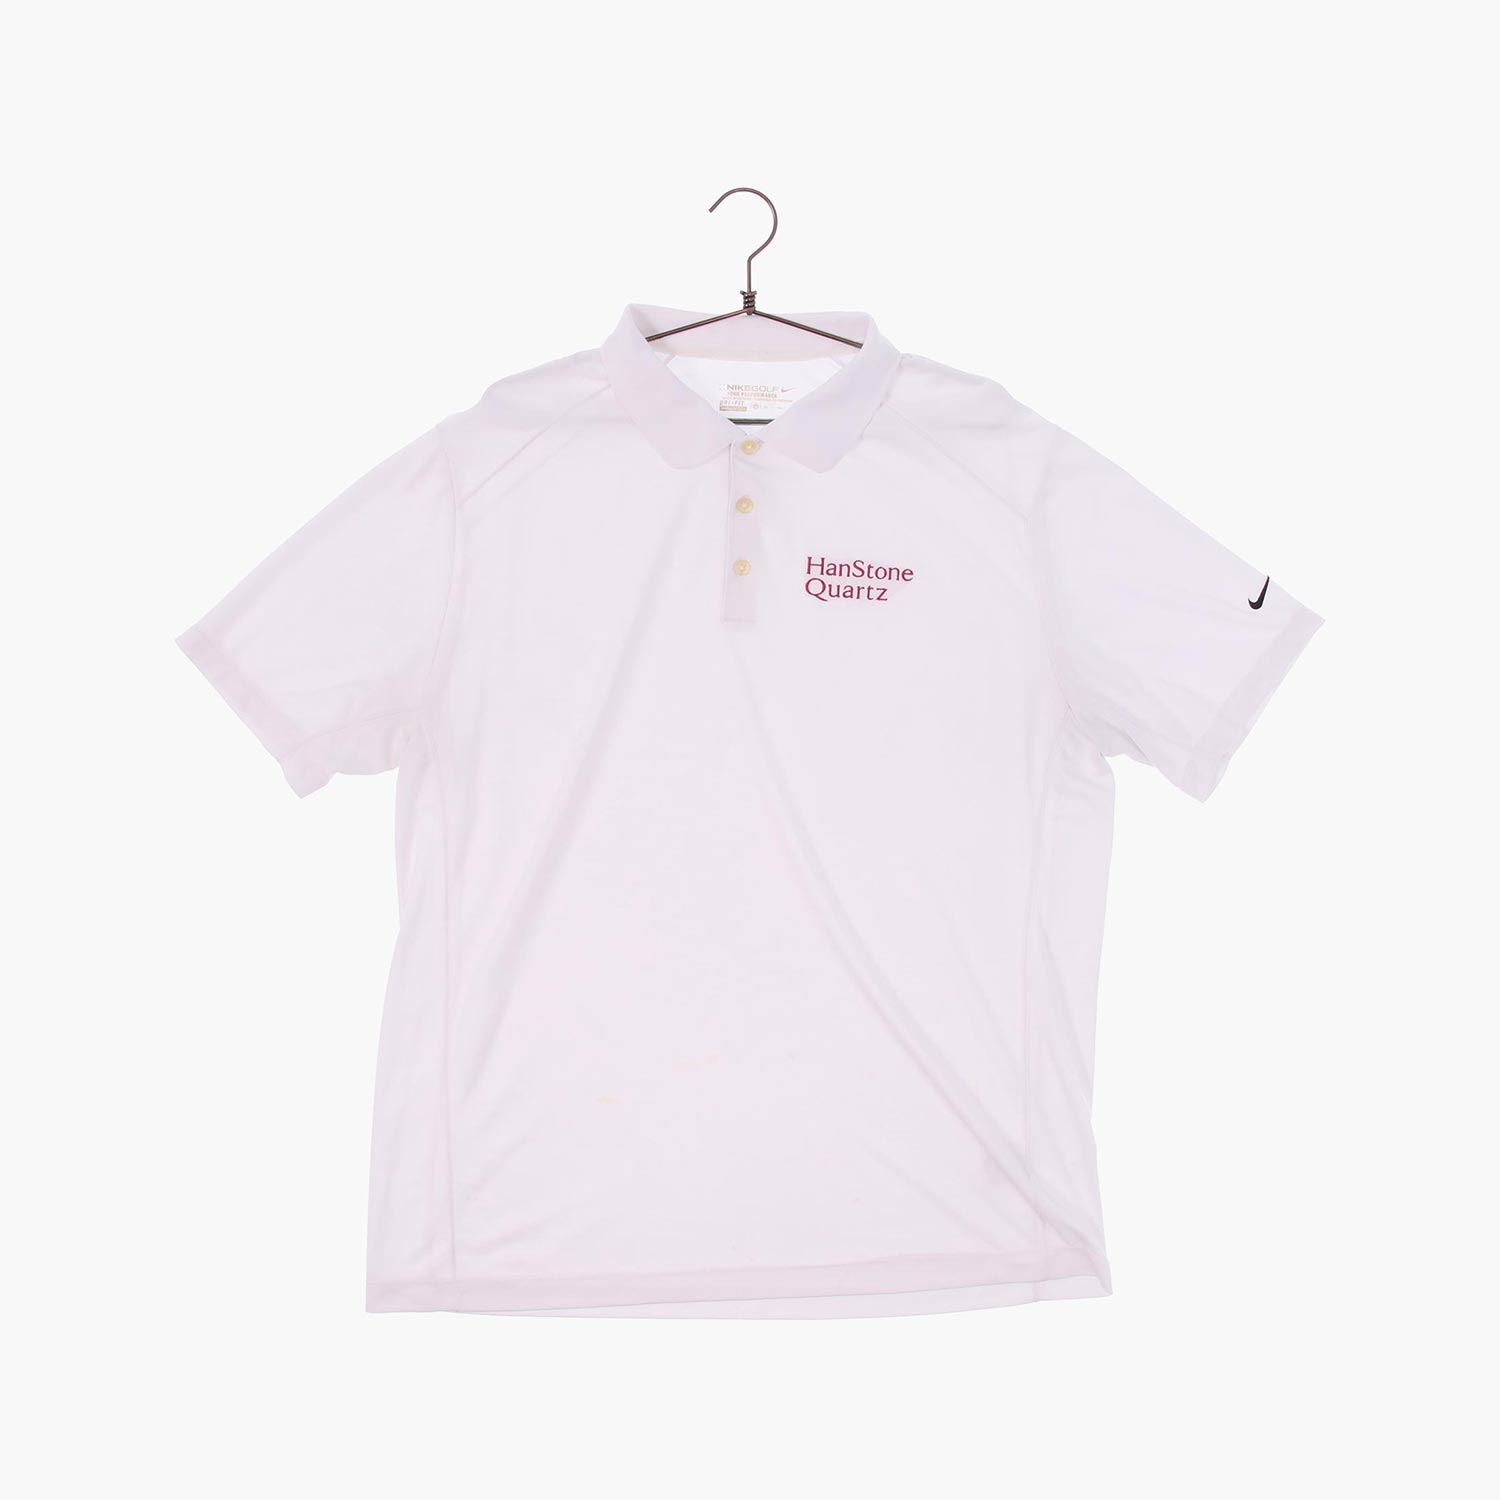 나이키 골프 폴리 스포츠 카라 반팔 티셔츠 공용 XL 빈티지톡